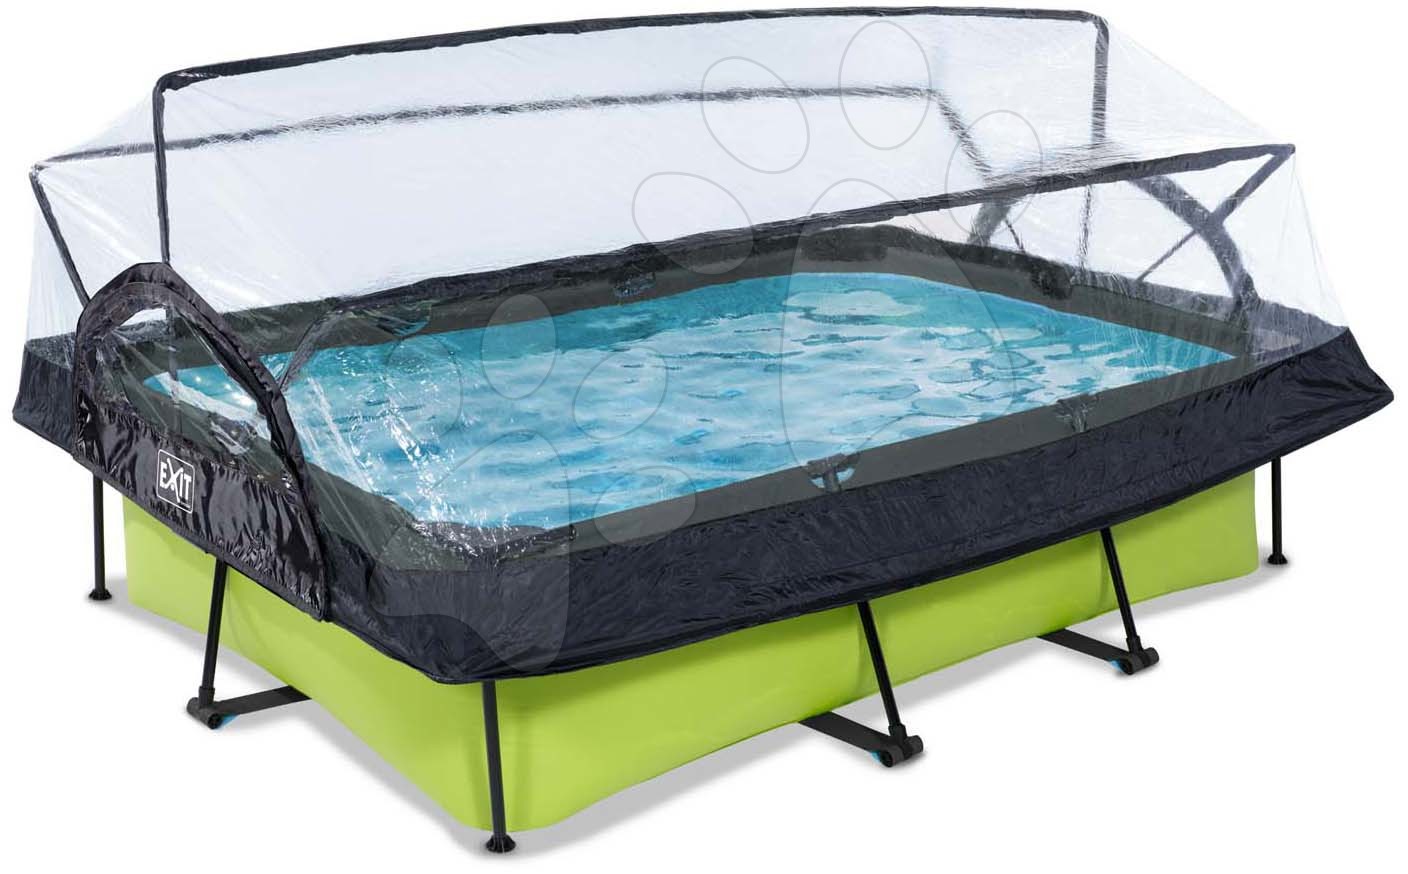 Bazén s krytom a filtráciou Lime pool Exit Toys oceľová konštrukcia 220*150*65 cm zelený od 6 rokov